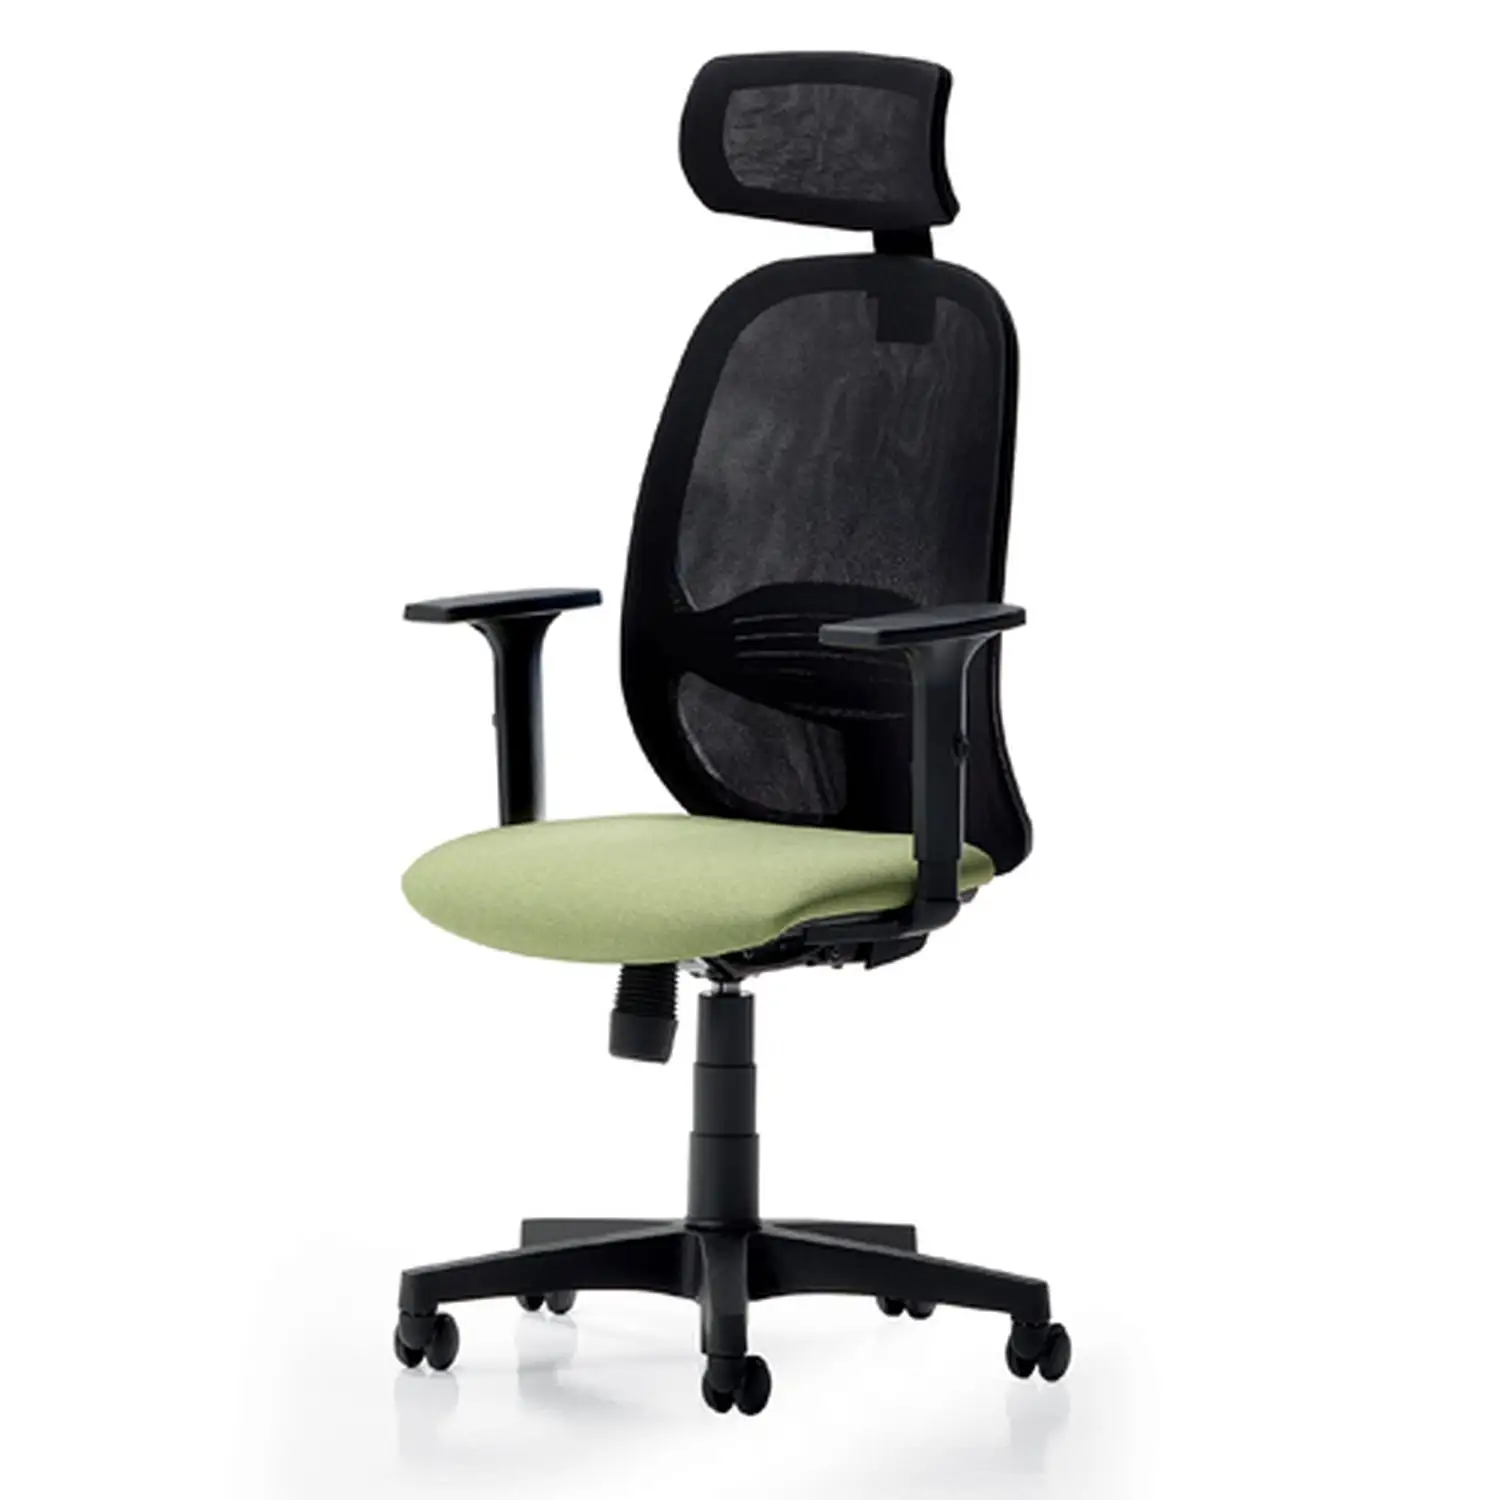 Silla de oficina operativa O-zone premium-Proveedor de sillas elegantes-Ergonomía avanzada para espacios de trabajo dinámicos